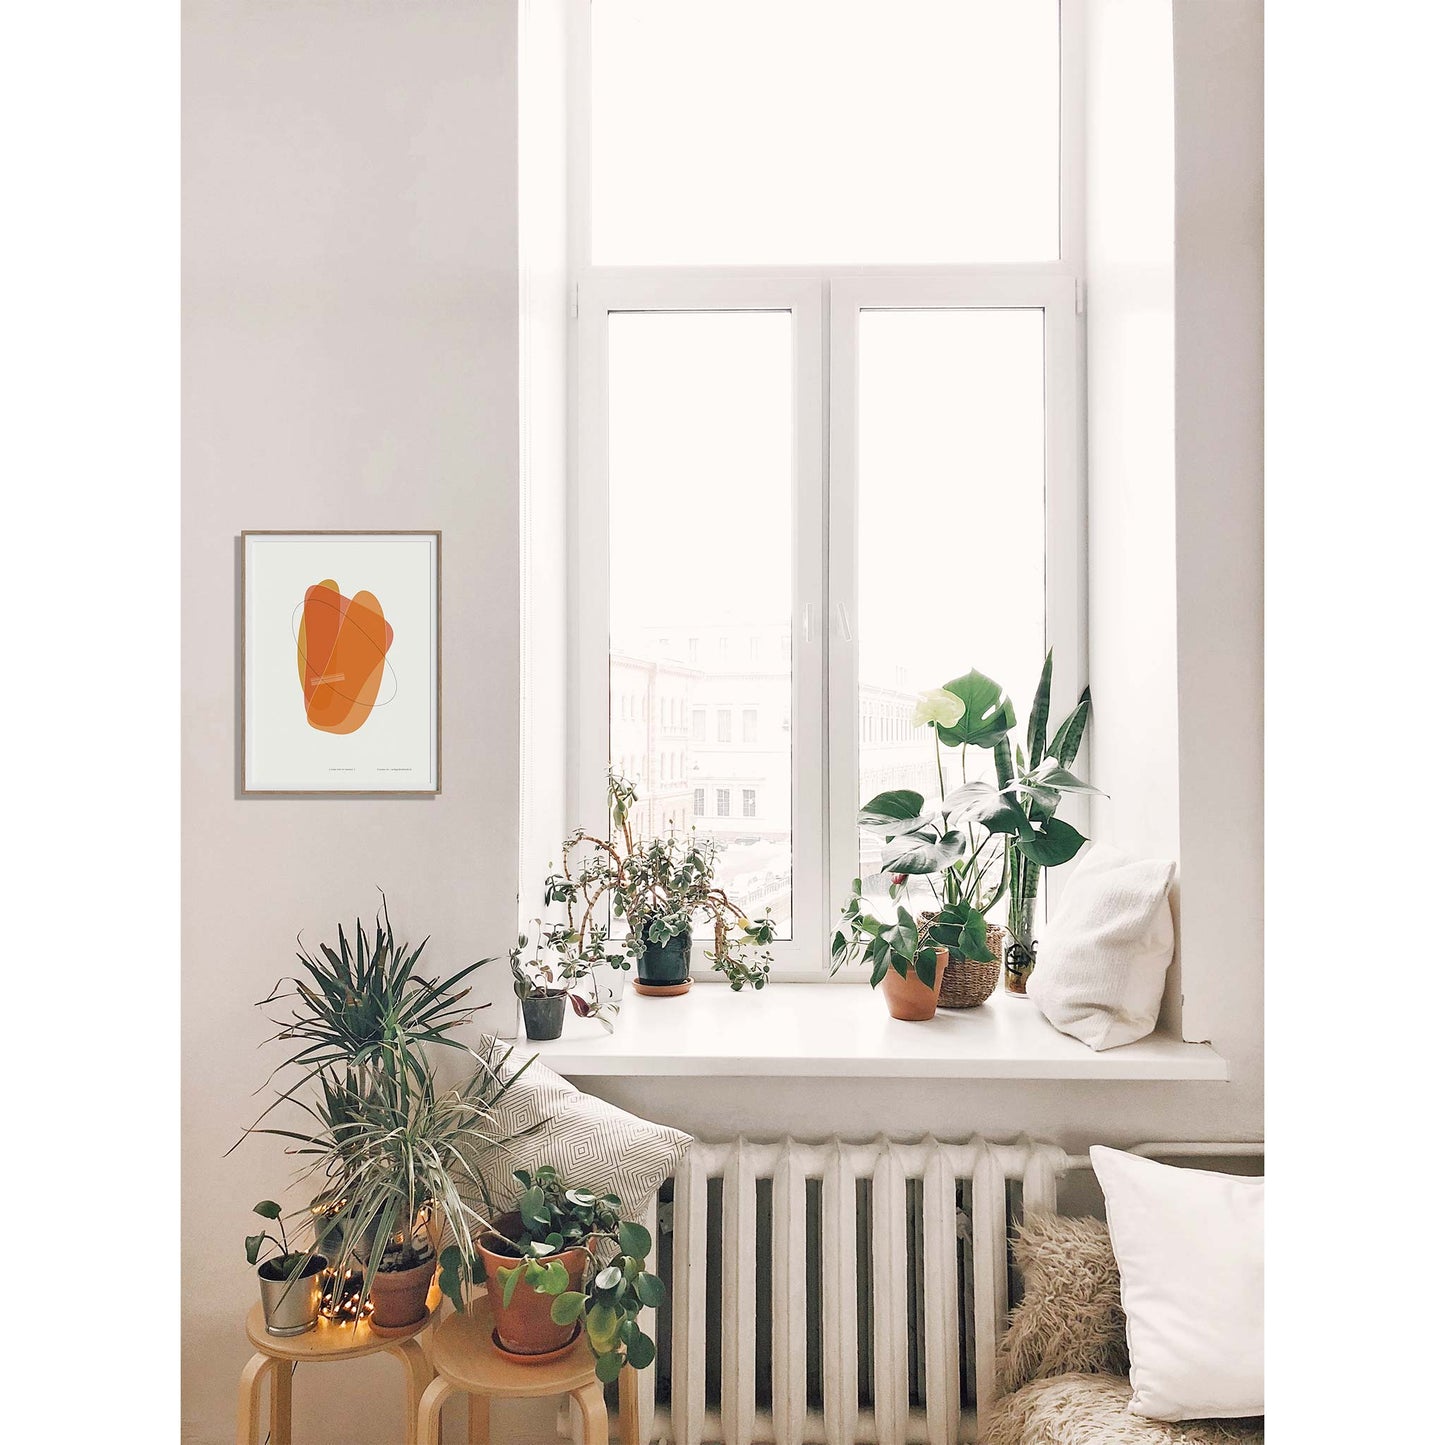 Productafbeelding, poster "vorm vier in orange", foto impresie 1, ingelijst hangend naast een raam in een interieur met planten